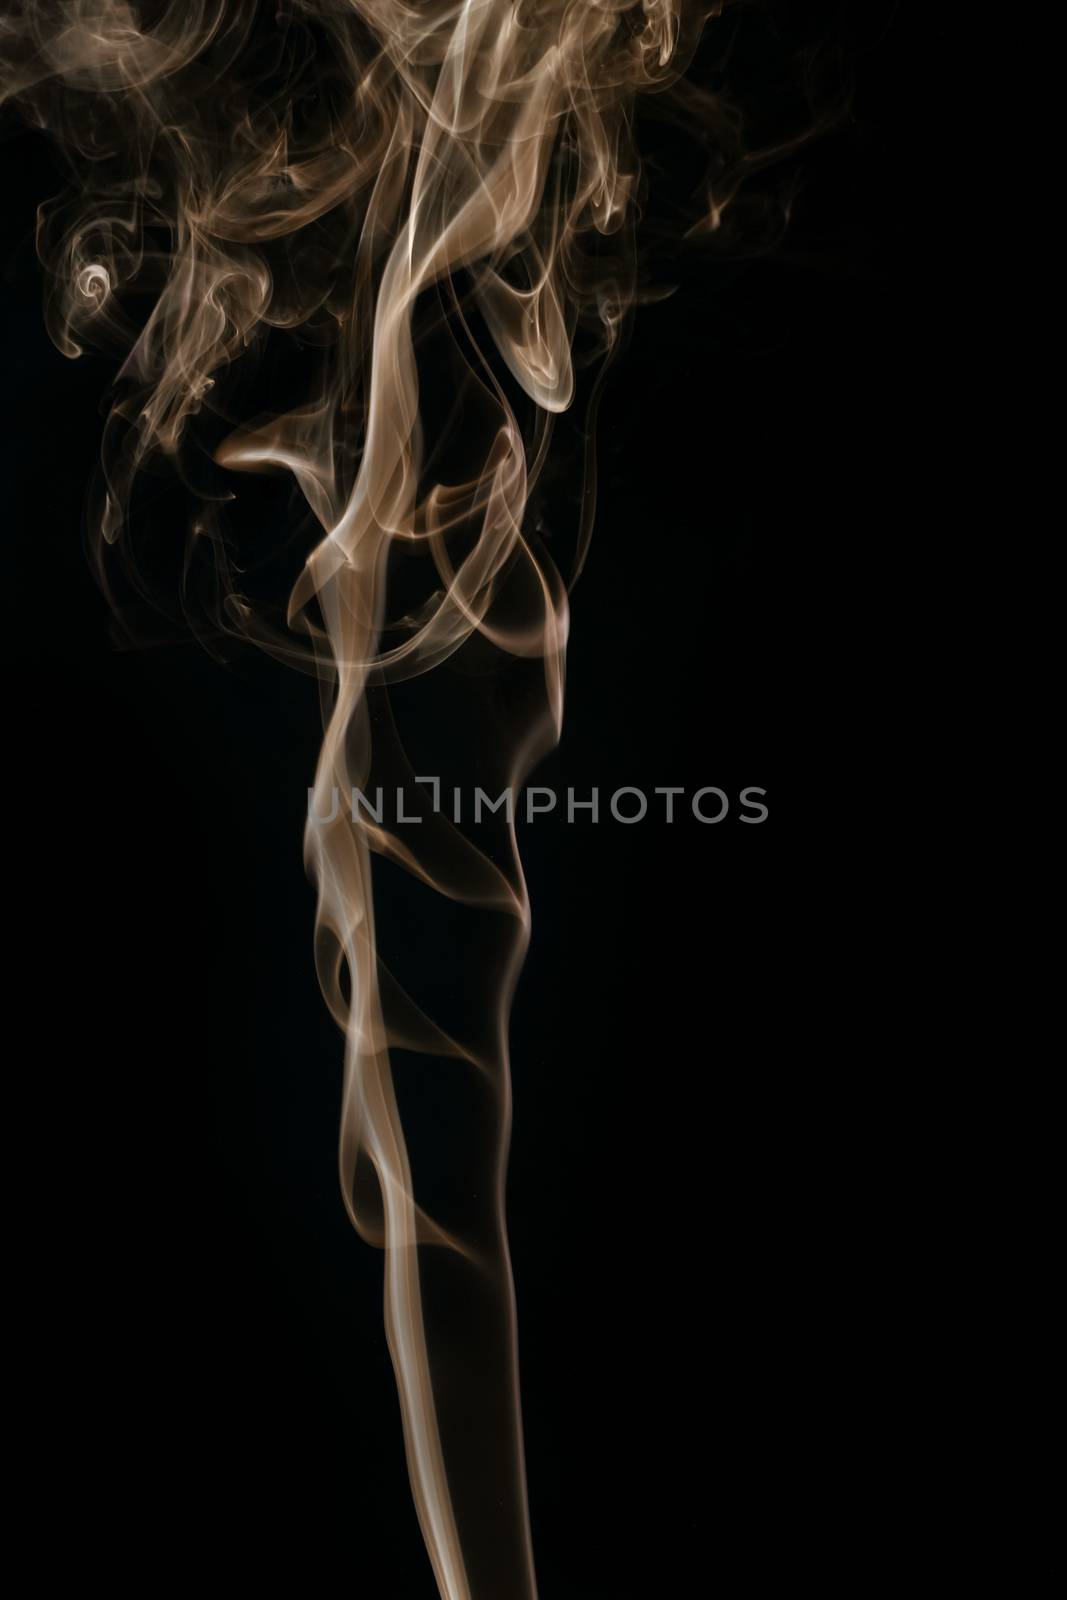 An image of a beautiful smoke background